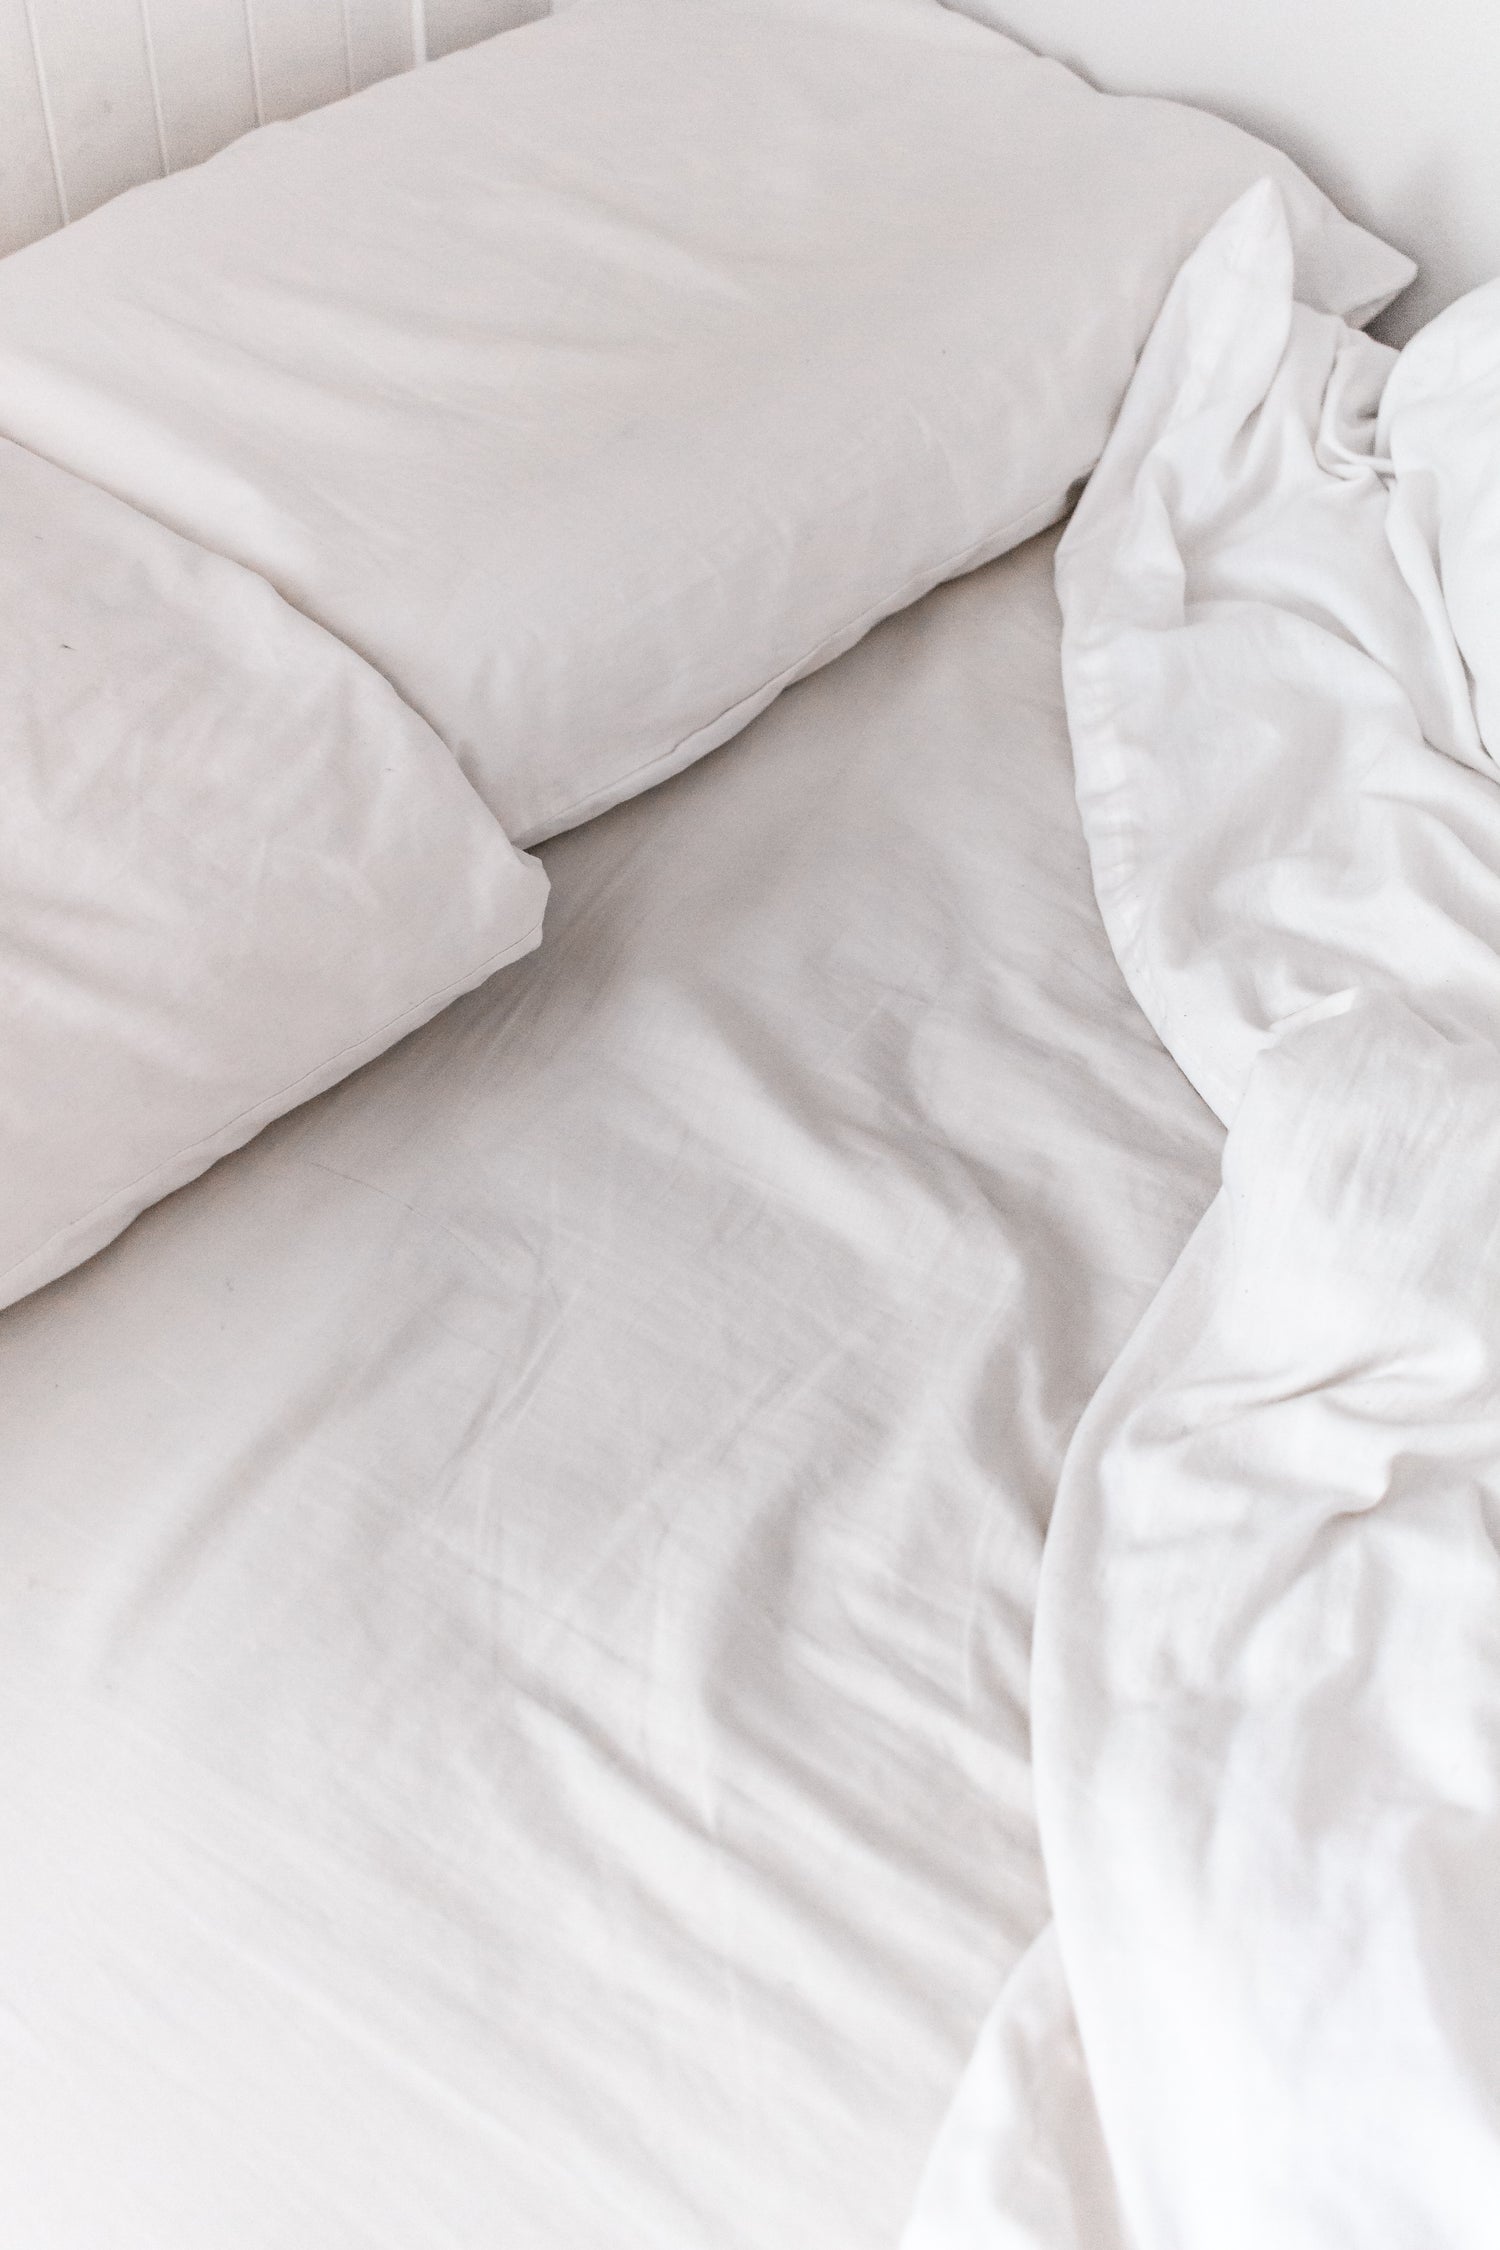 L'importanza del cuscino: come scegliere il cuscino giusto?